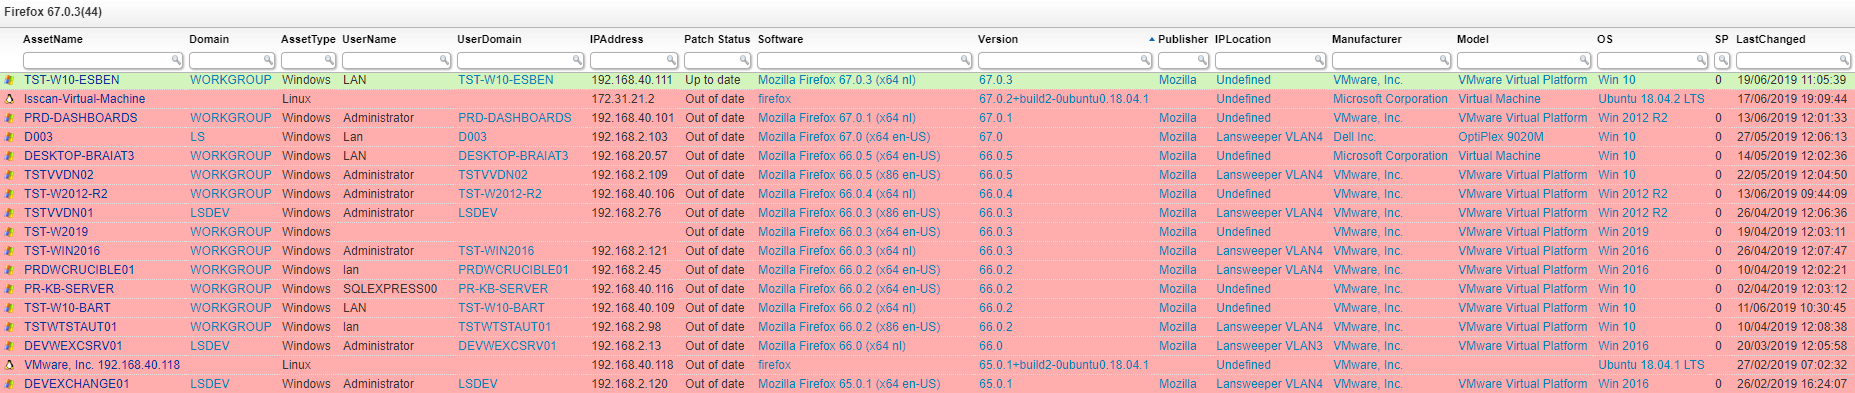 Firefox 67.0.3 zero-day vulnerability